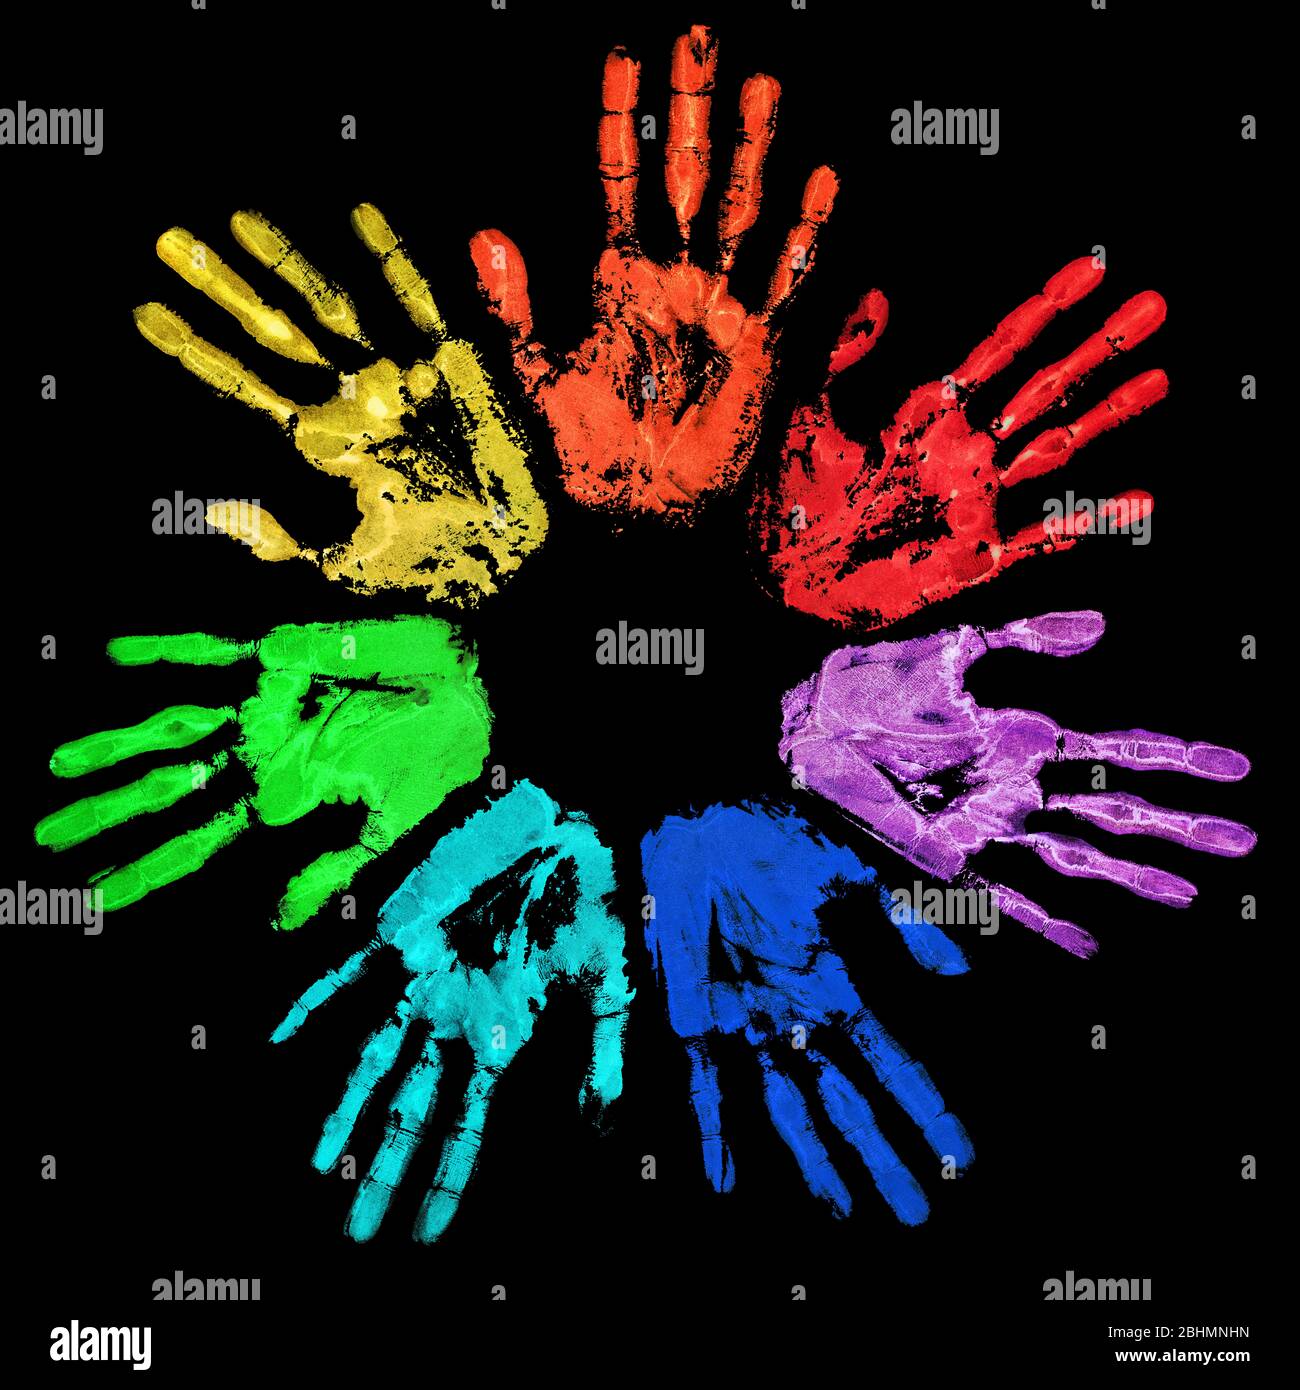 Les mains en couleur arc-en-ciel sont imprimées en cercle sur fond noir, avec une image imprimée colorée à la main aquarelle, une silhouette de main humaine peinte Banque D'Images